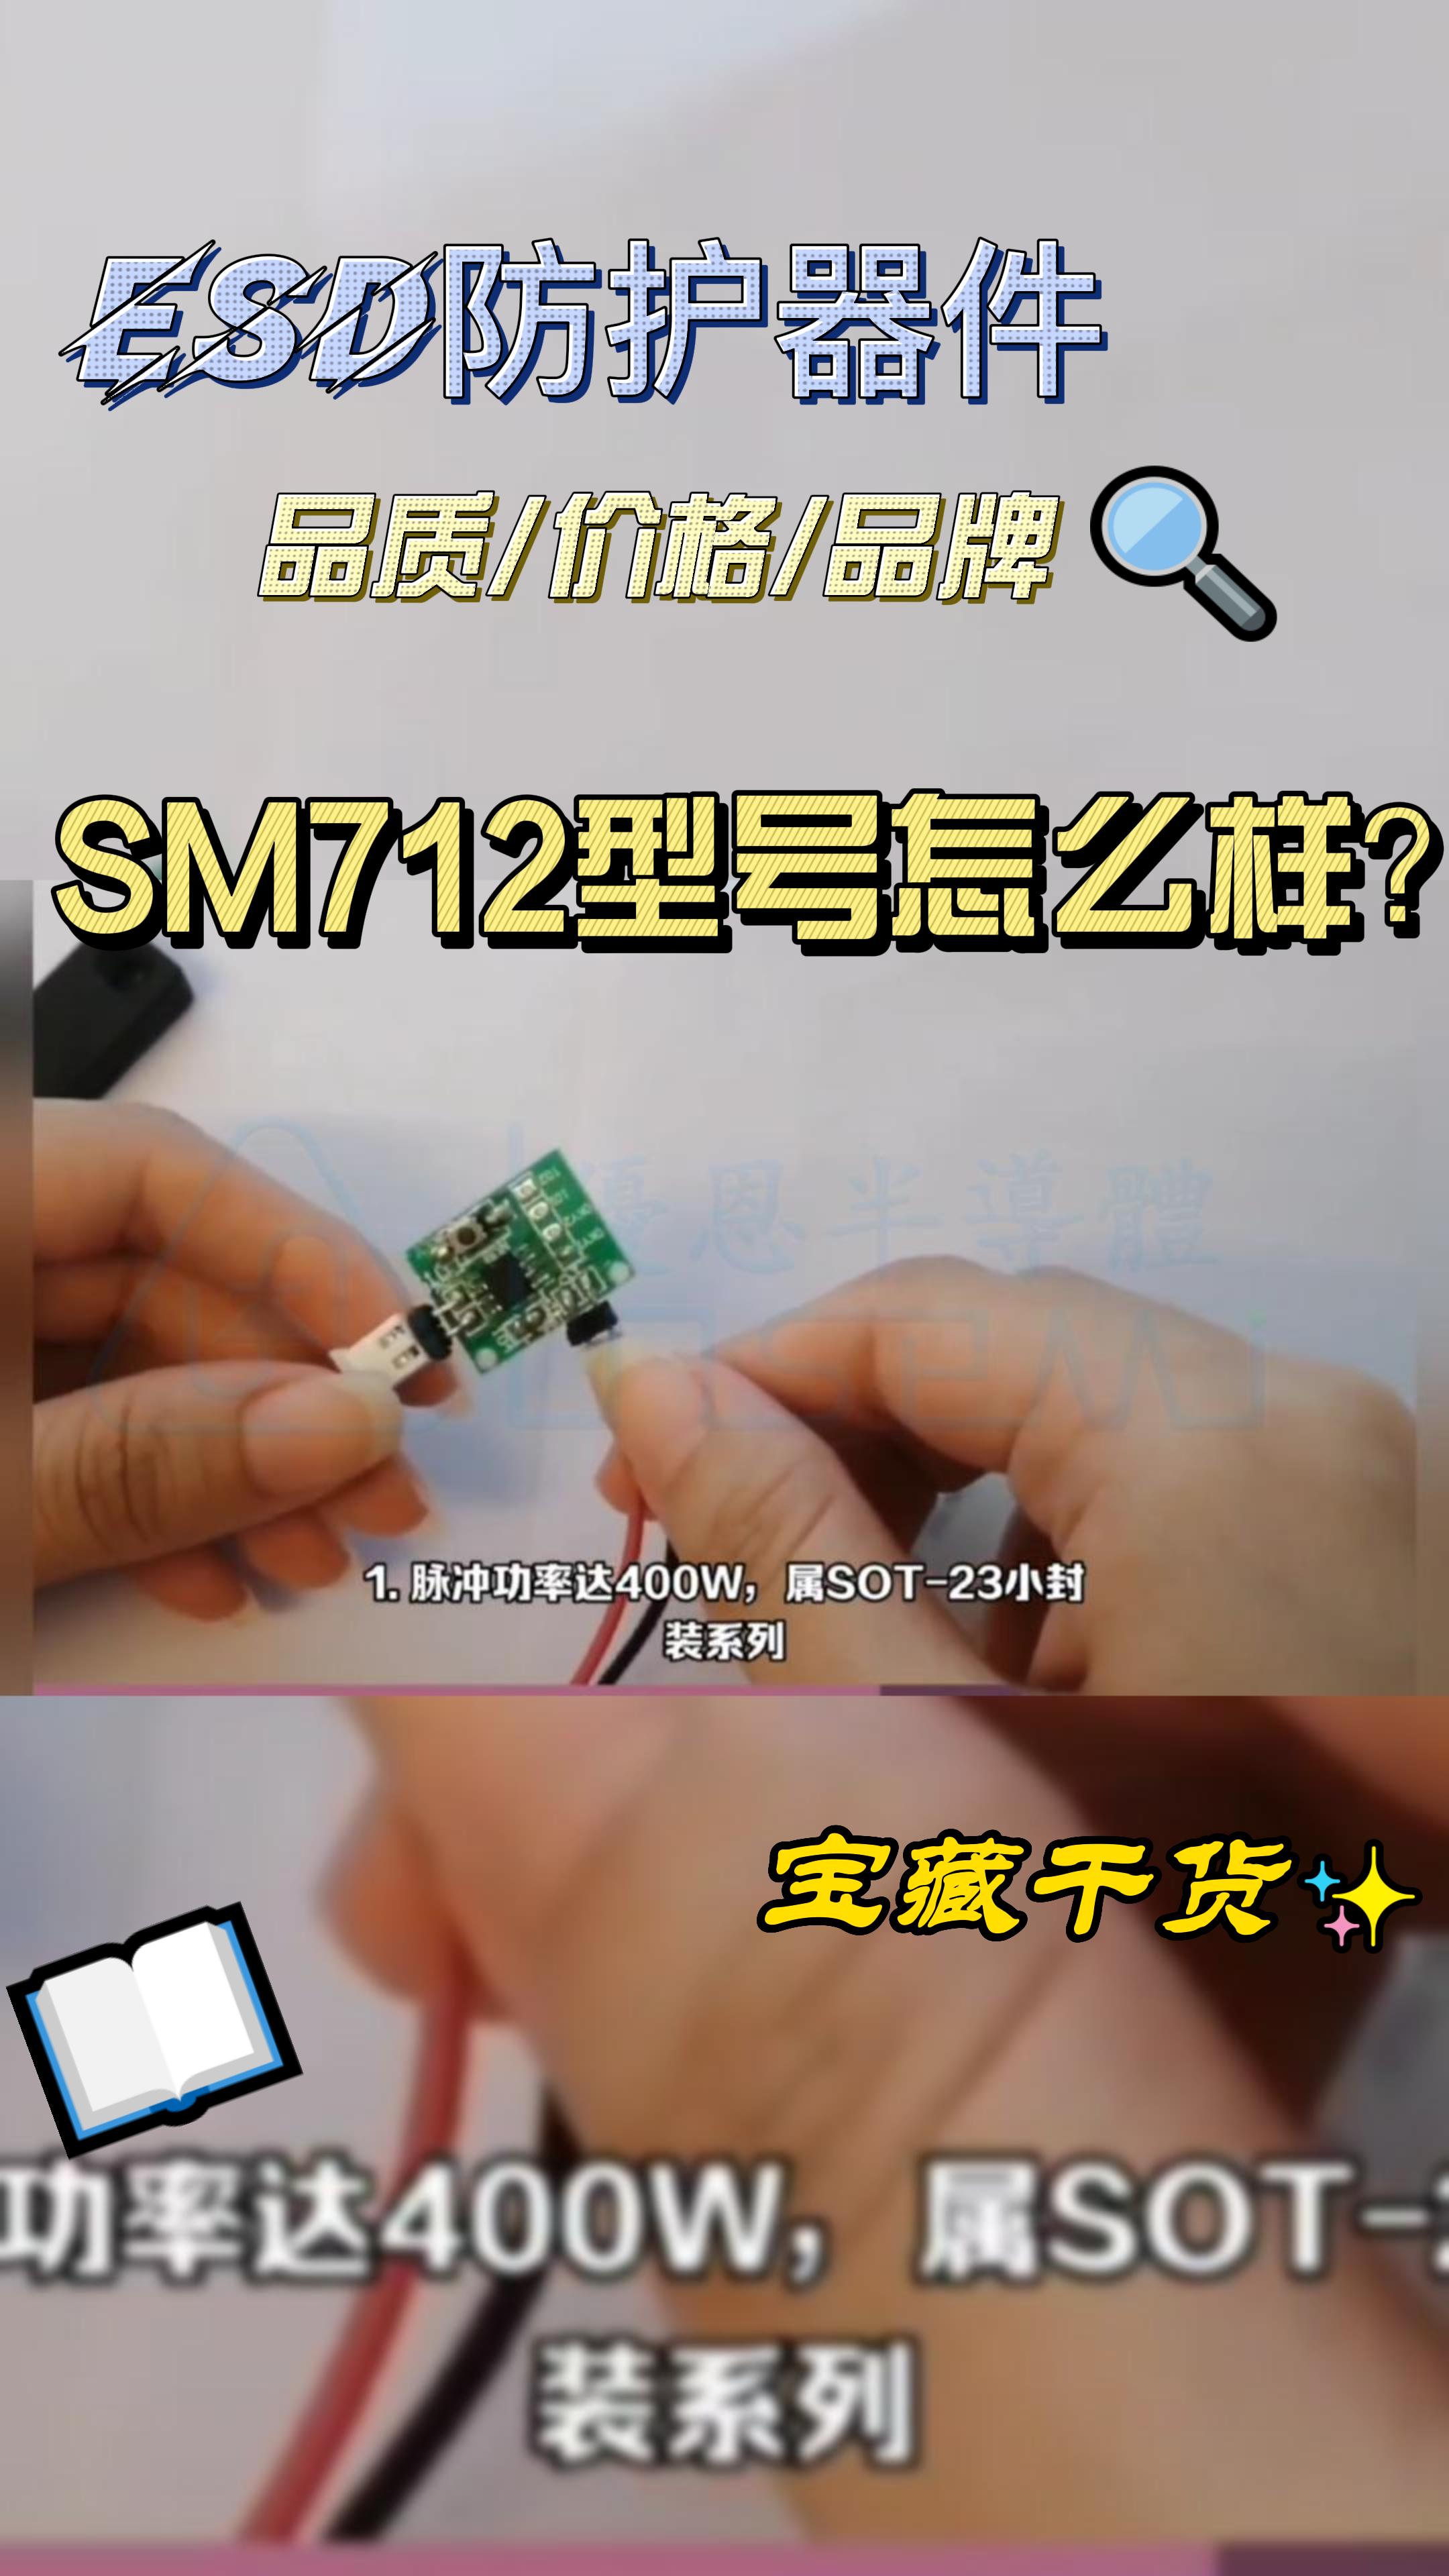 电路端口防护器件-ESD静电二极管SM712 #硬声创作季 #电路设计 #电子元器件 #esd#静电二极管 